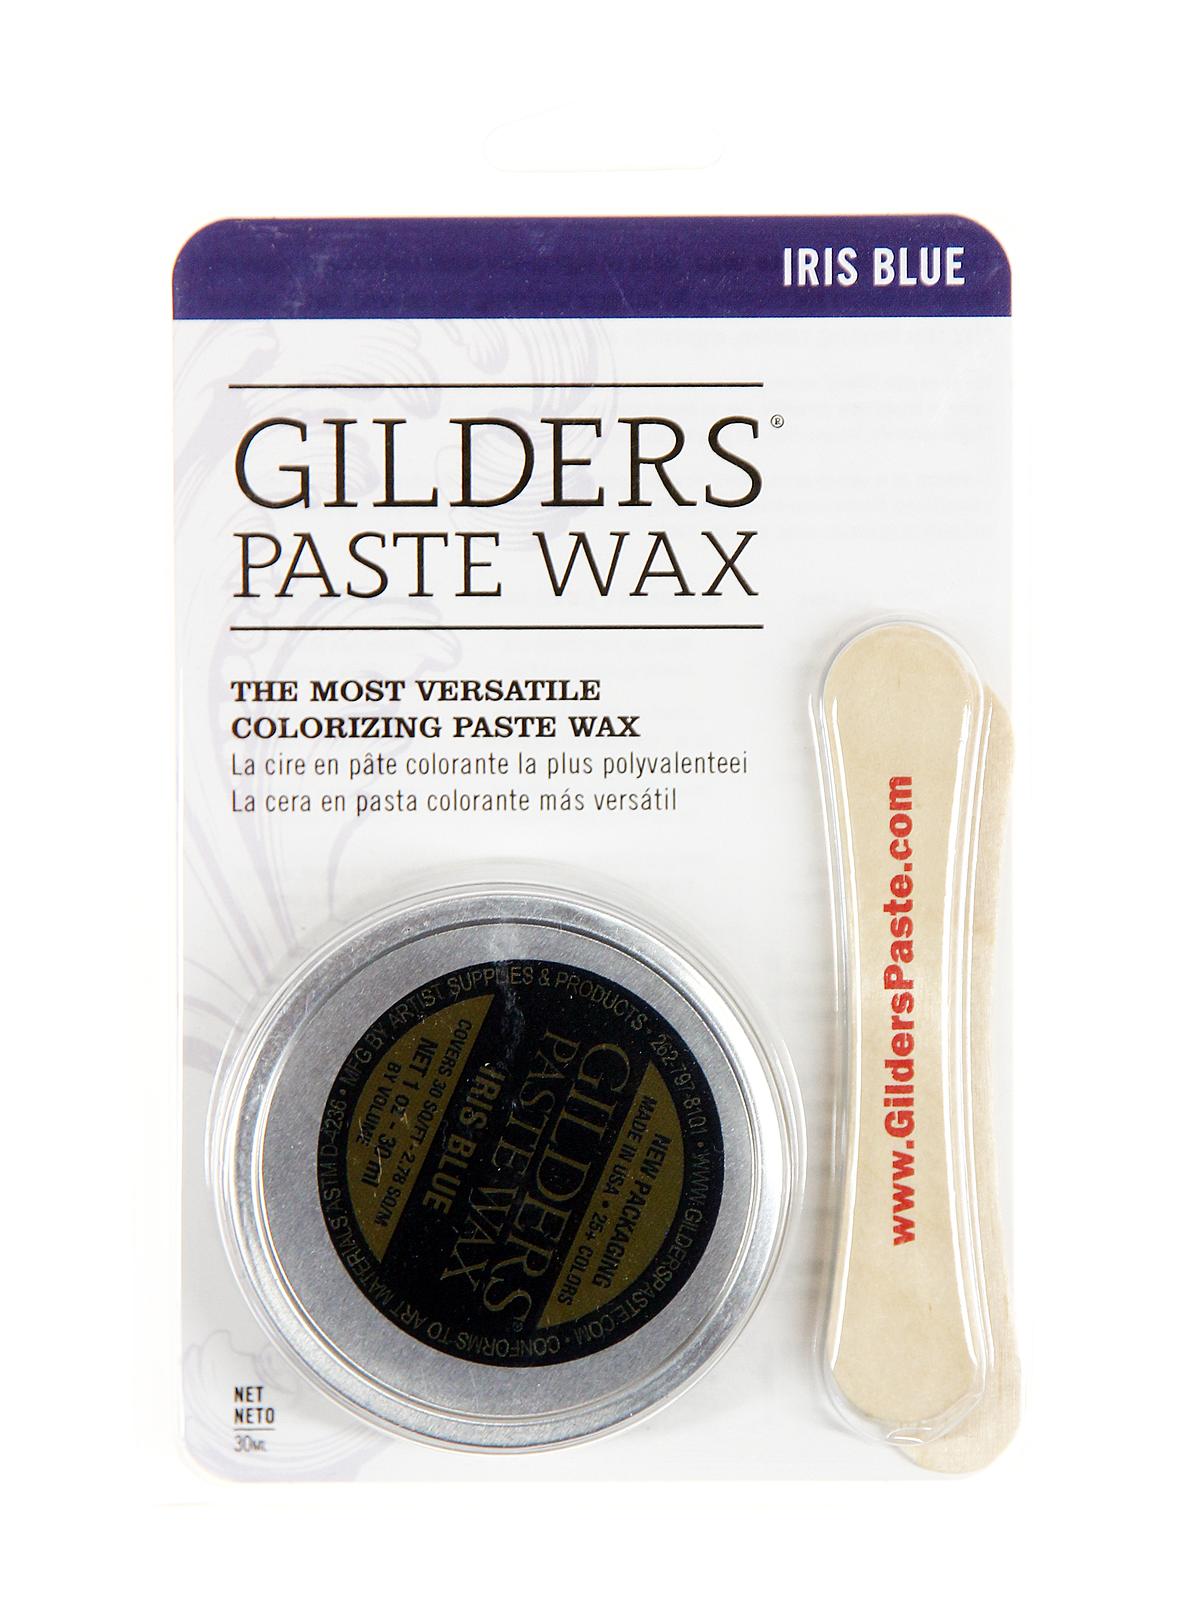 Gilder's Paste Wax Iris Blue 1 Oz. Tin